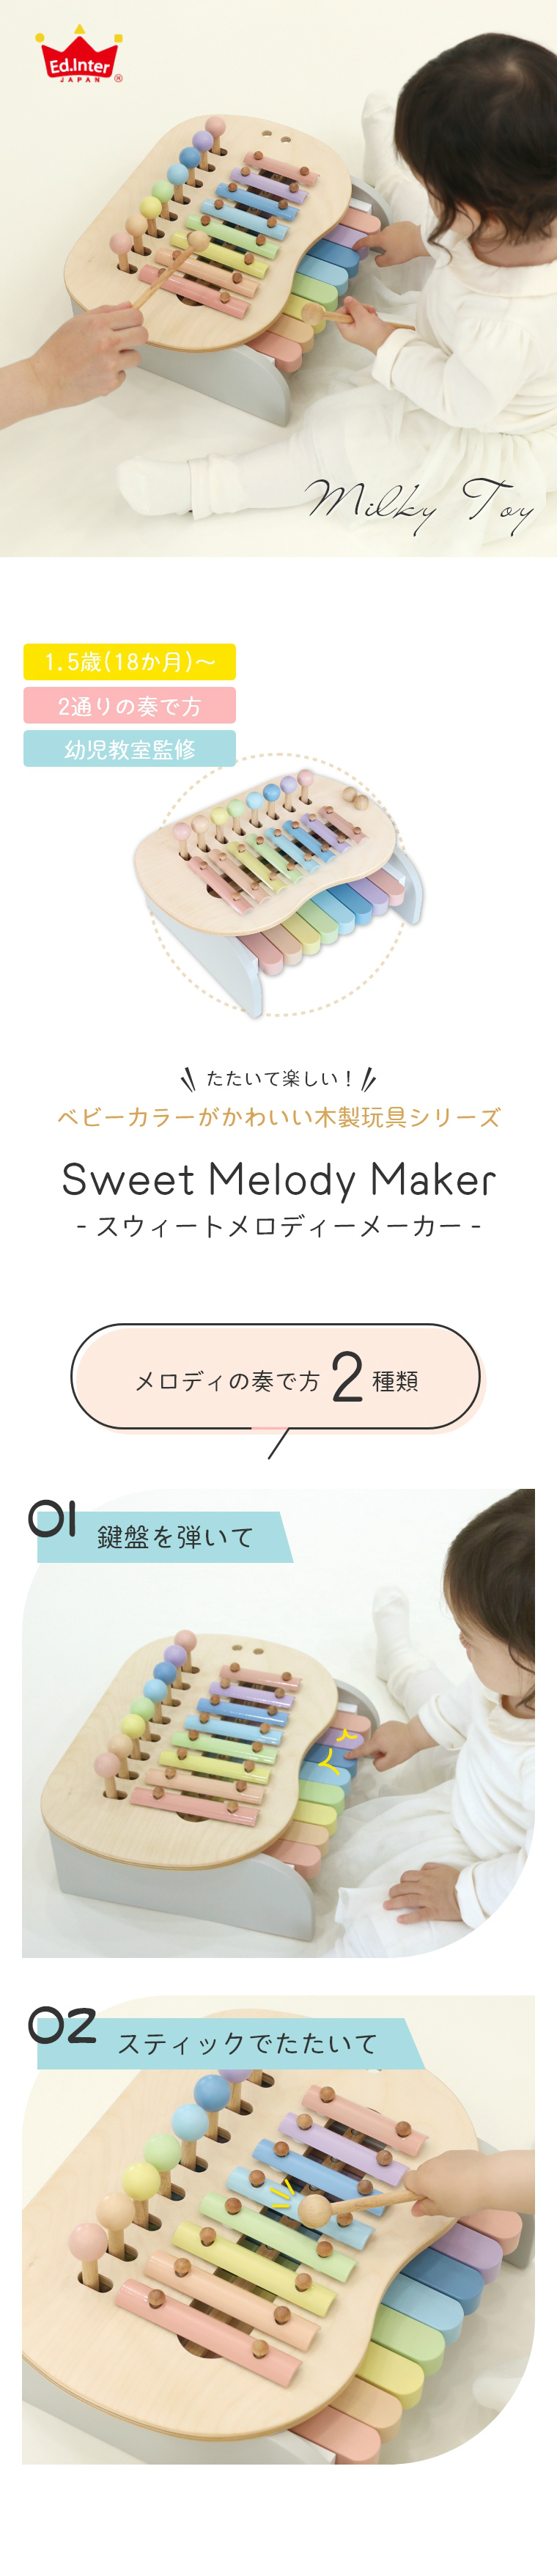 ĊyI Sweet Melody Maker XEB[gfB[[J[ (~L[gC)